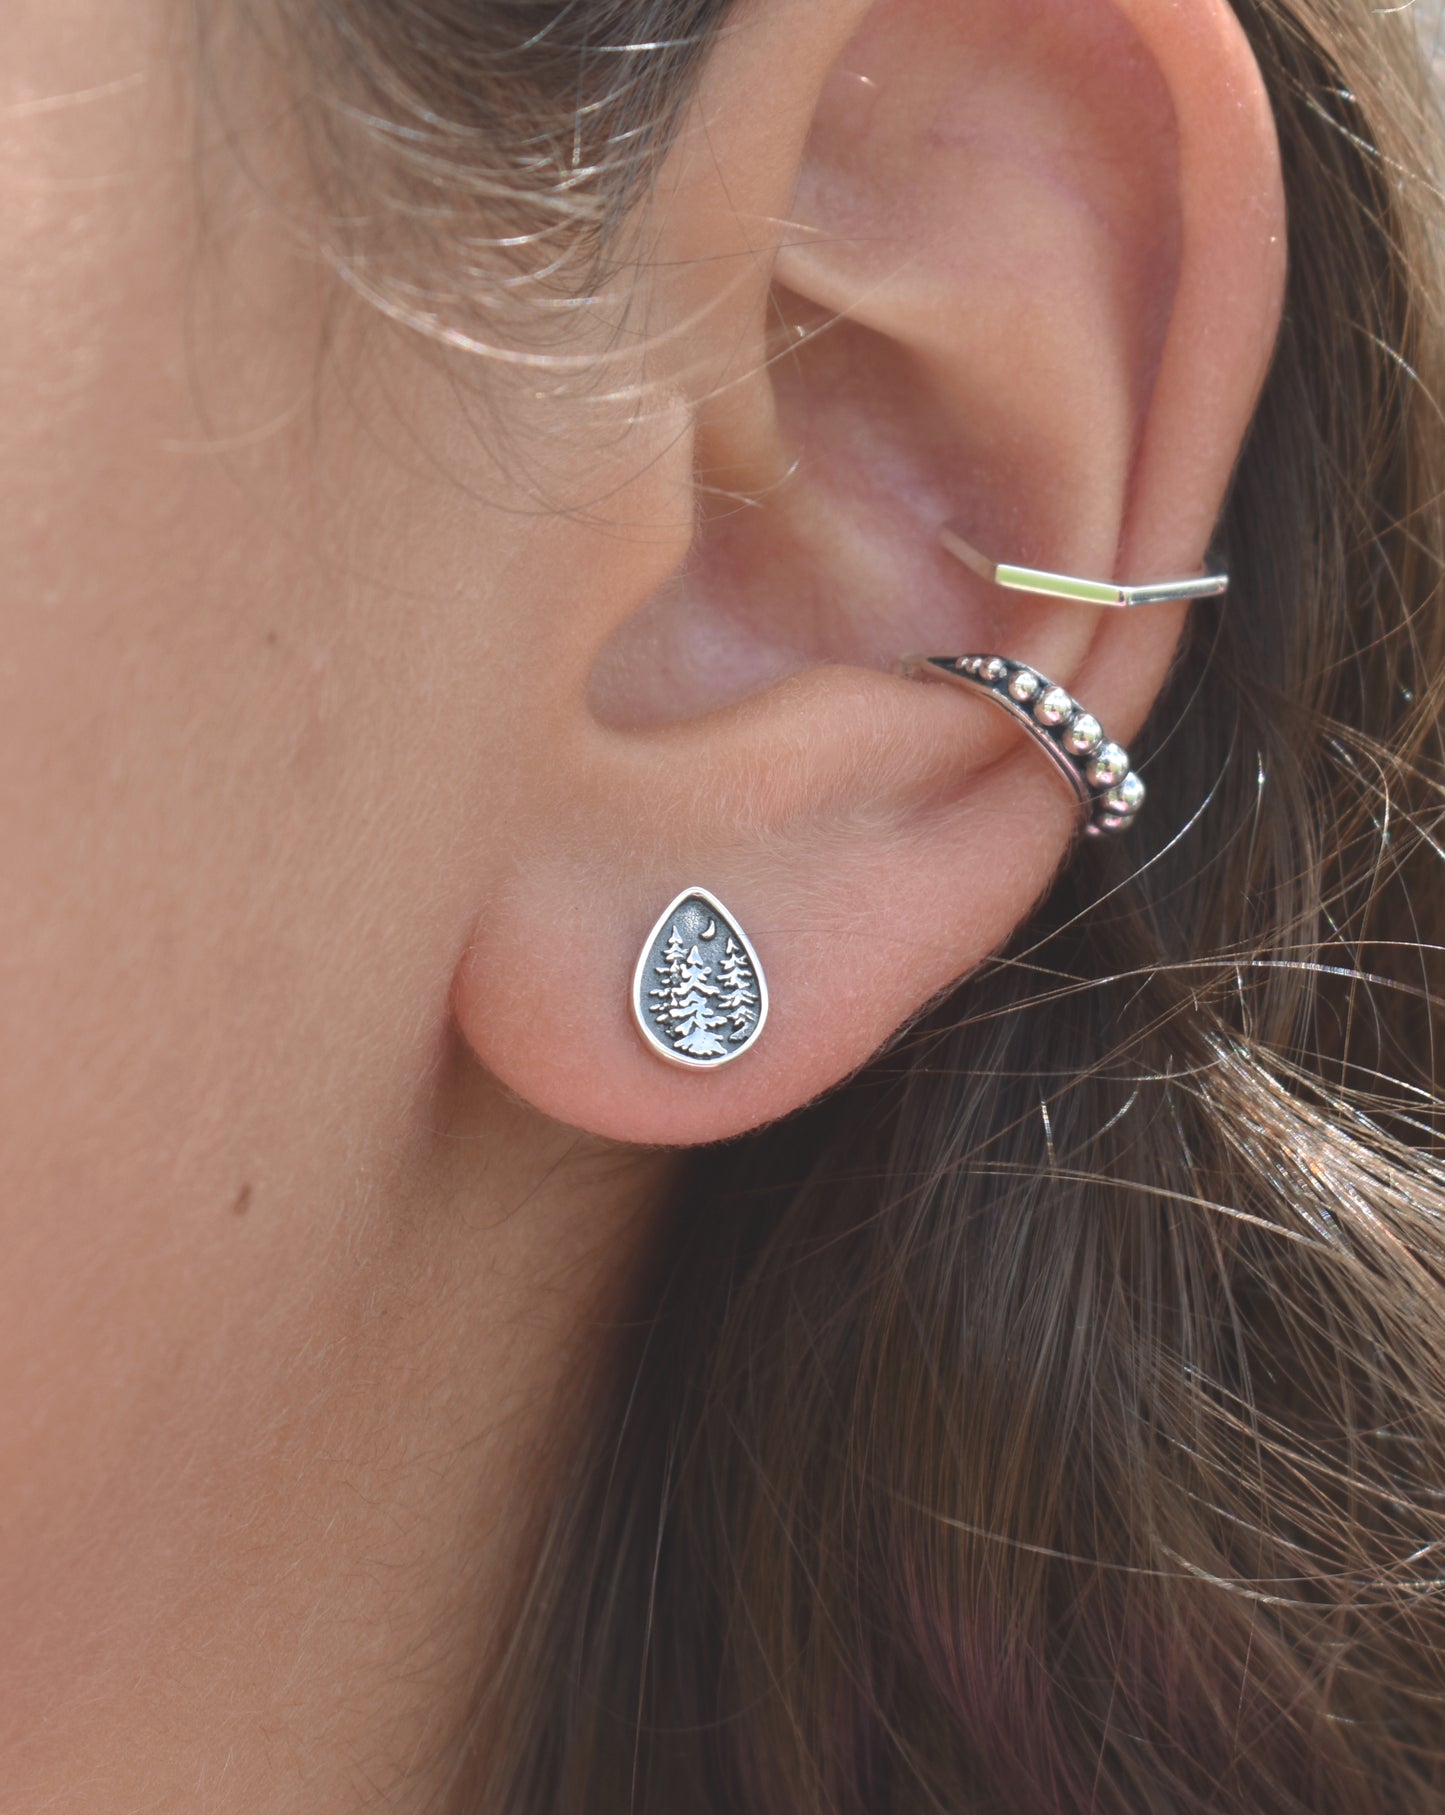 Forest Dweller Earrings-Tree Studs, Mountain Earrings-Sterling Silver Teardrop